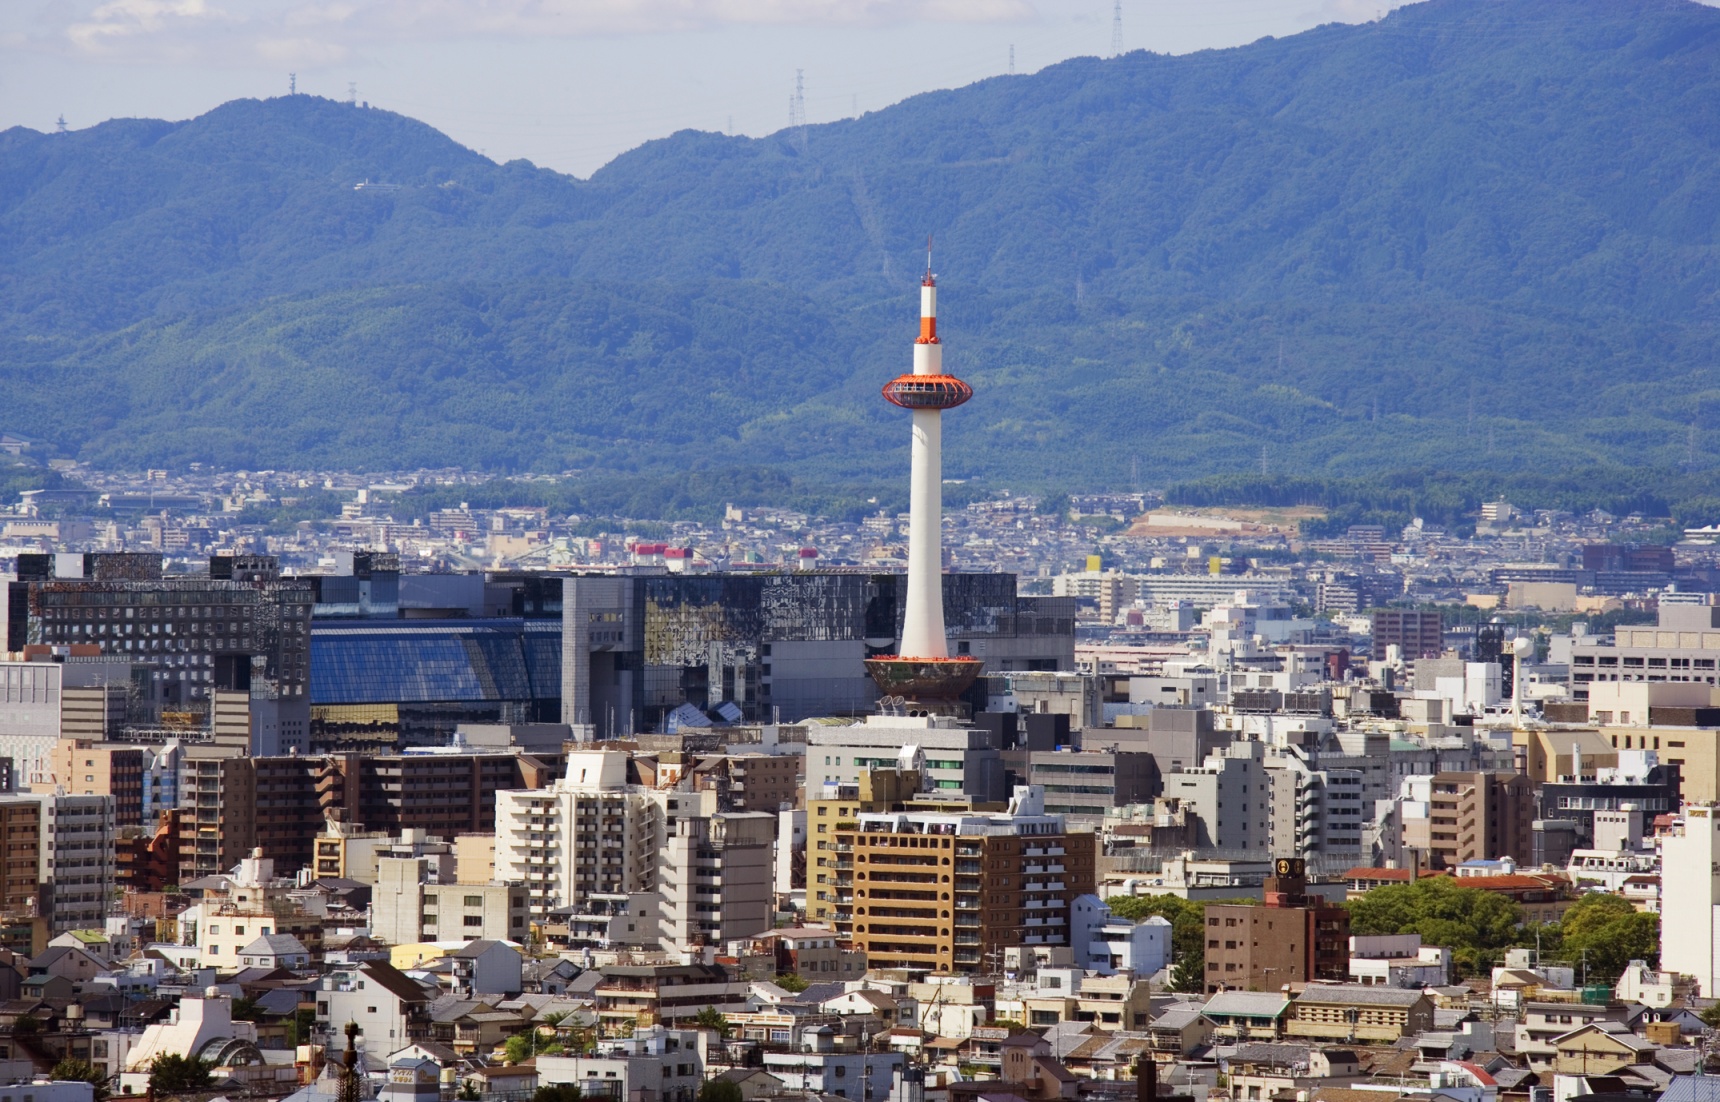 ชมวิวจากยอดหอคอย Kyoto Tower